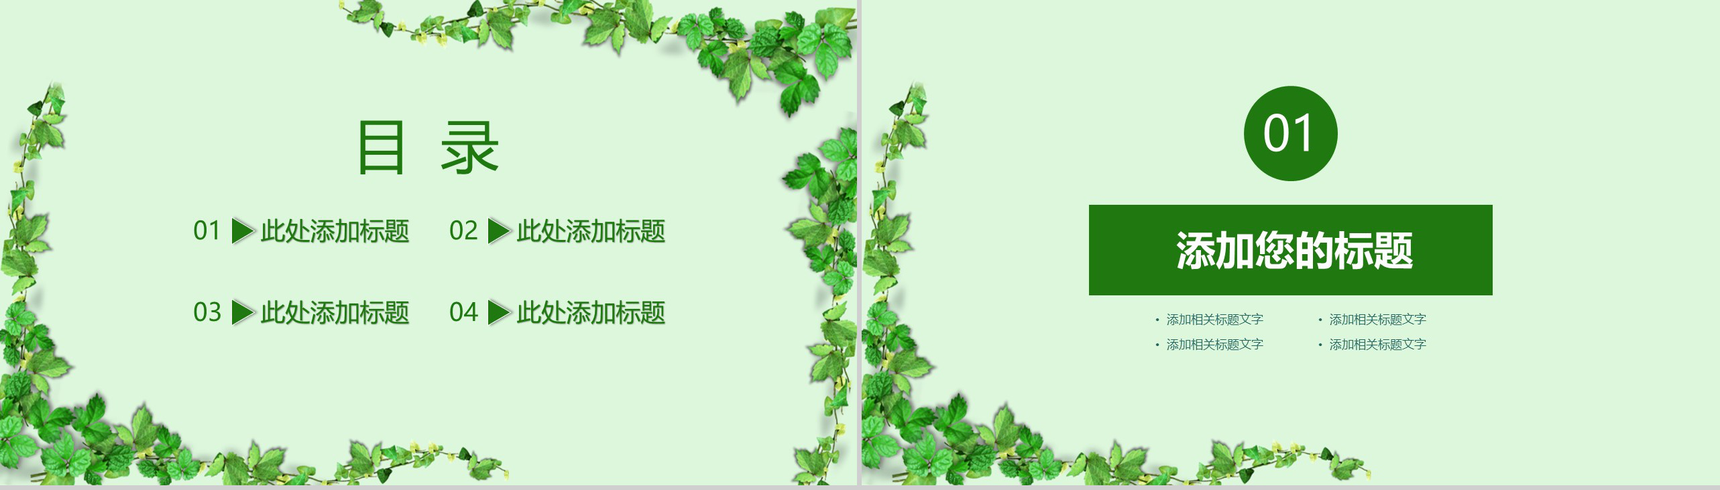 绿色植物小清新系列个人竞聘简历PPT模板-2